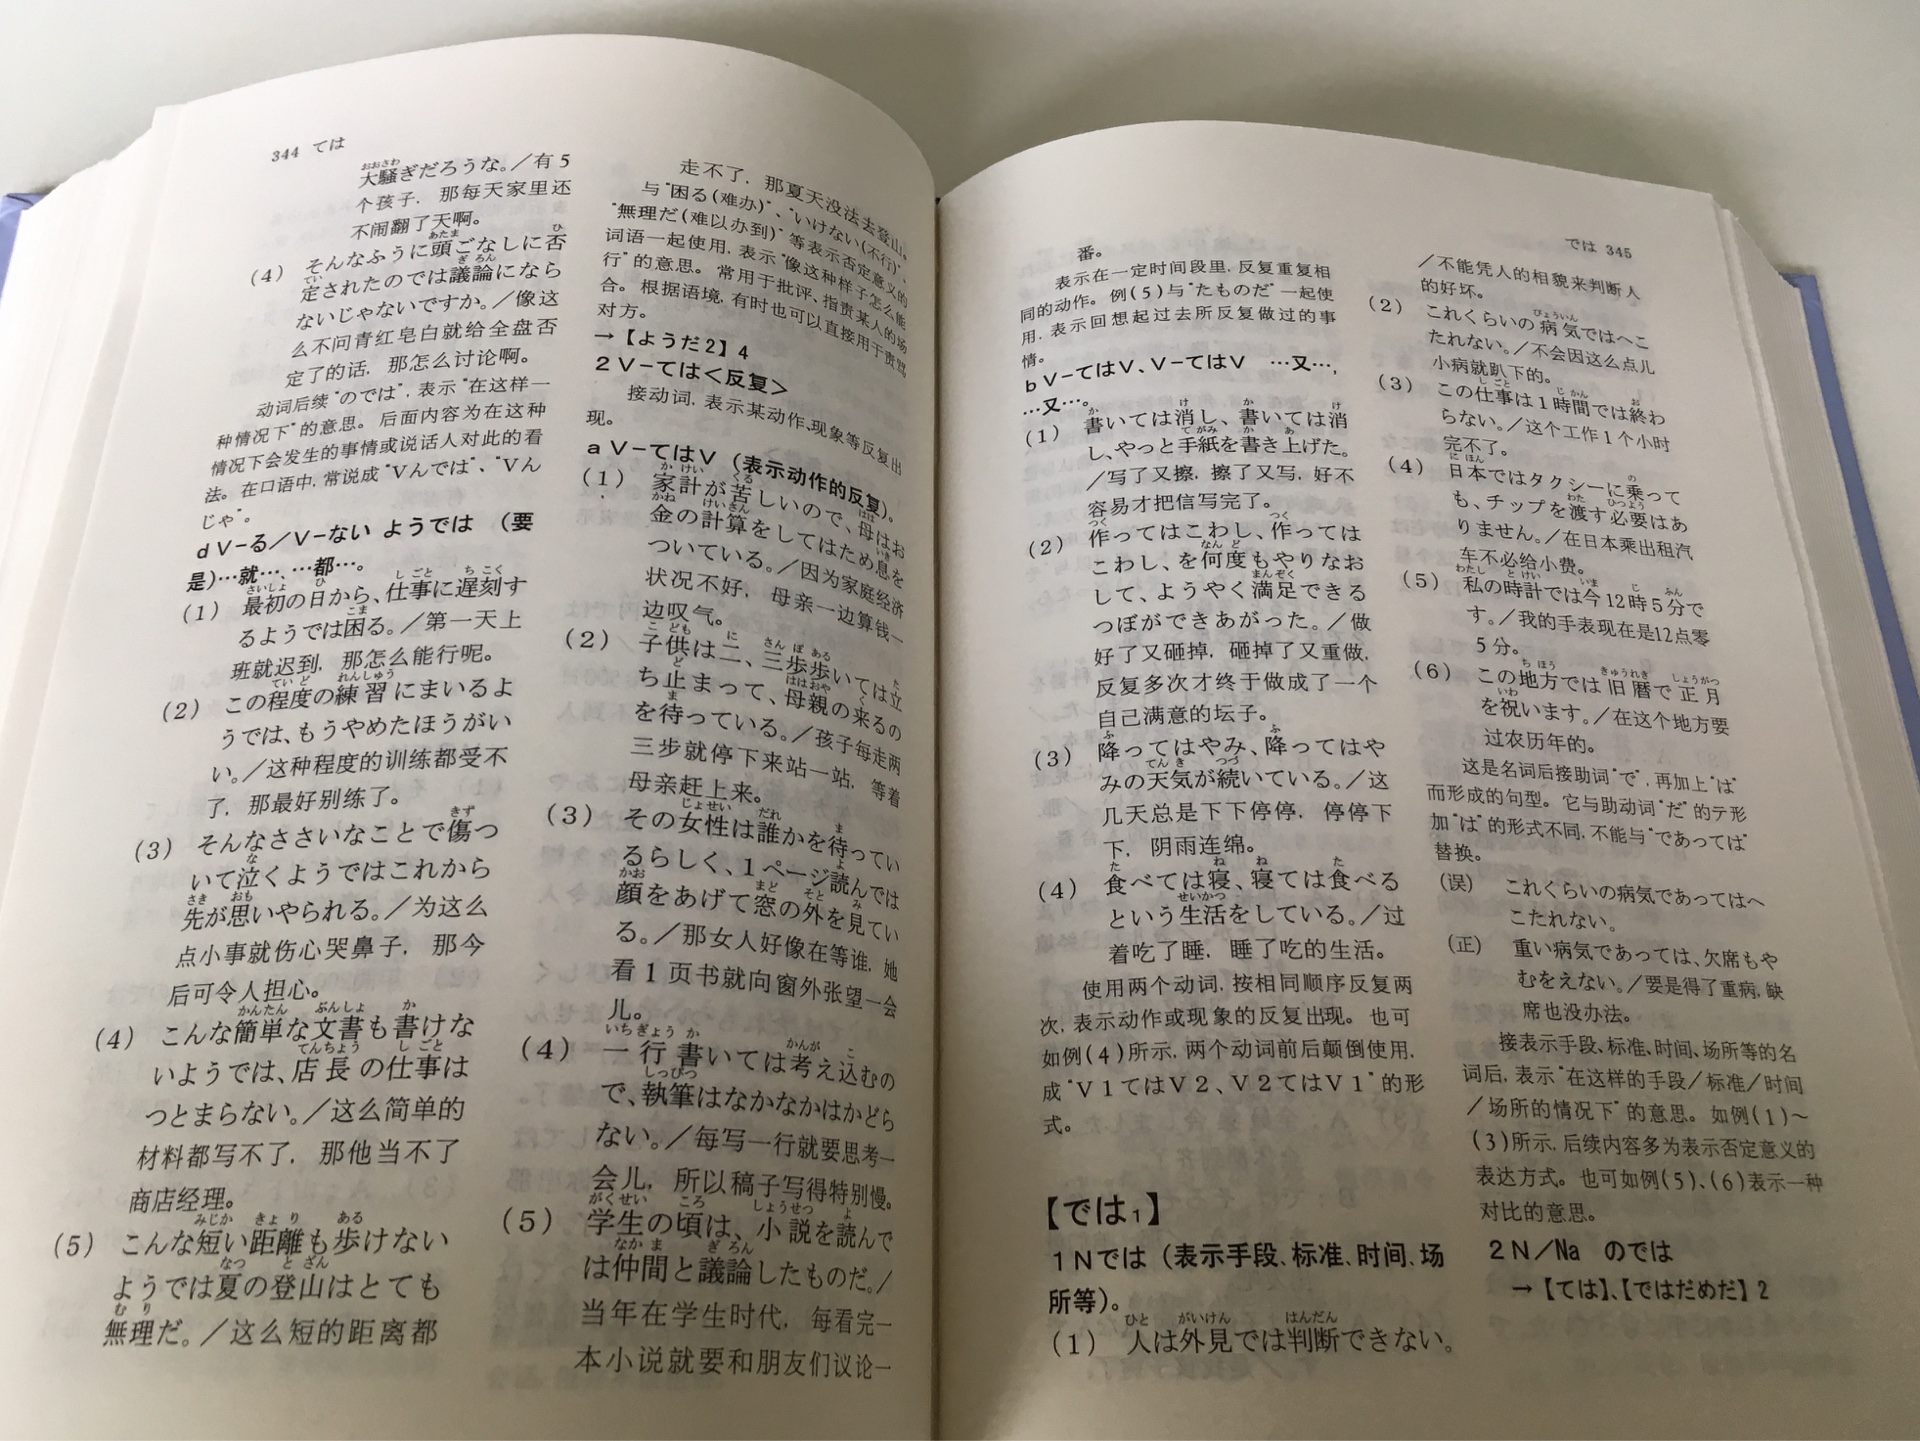 可以说是日语句型方面最好的书之一了，口碑极佳，3000个句型远超一般的同类书籍，汉字有注音，最后有五十音和按用途归类的索引，便于查询，并且不与jlpt挂钩，这才是我要的。纸张有点薄，好在是辞典，有硬封面。纸质书就是比扫描的pdf看着舒服。包装就一般了，没做任何防护，就是个袋子装起来，幸好没破损啥的。